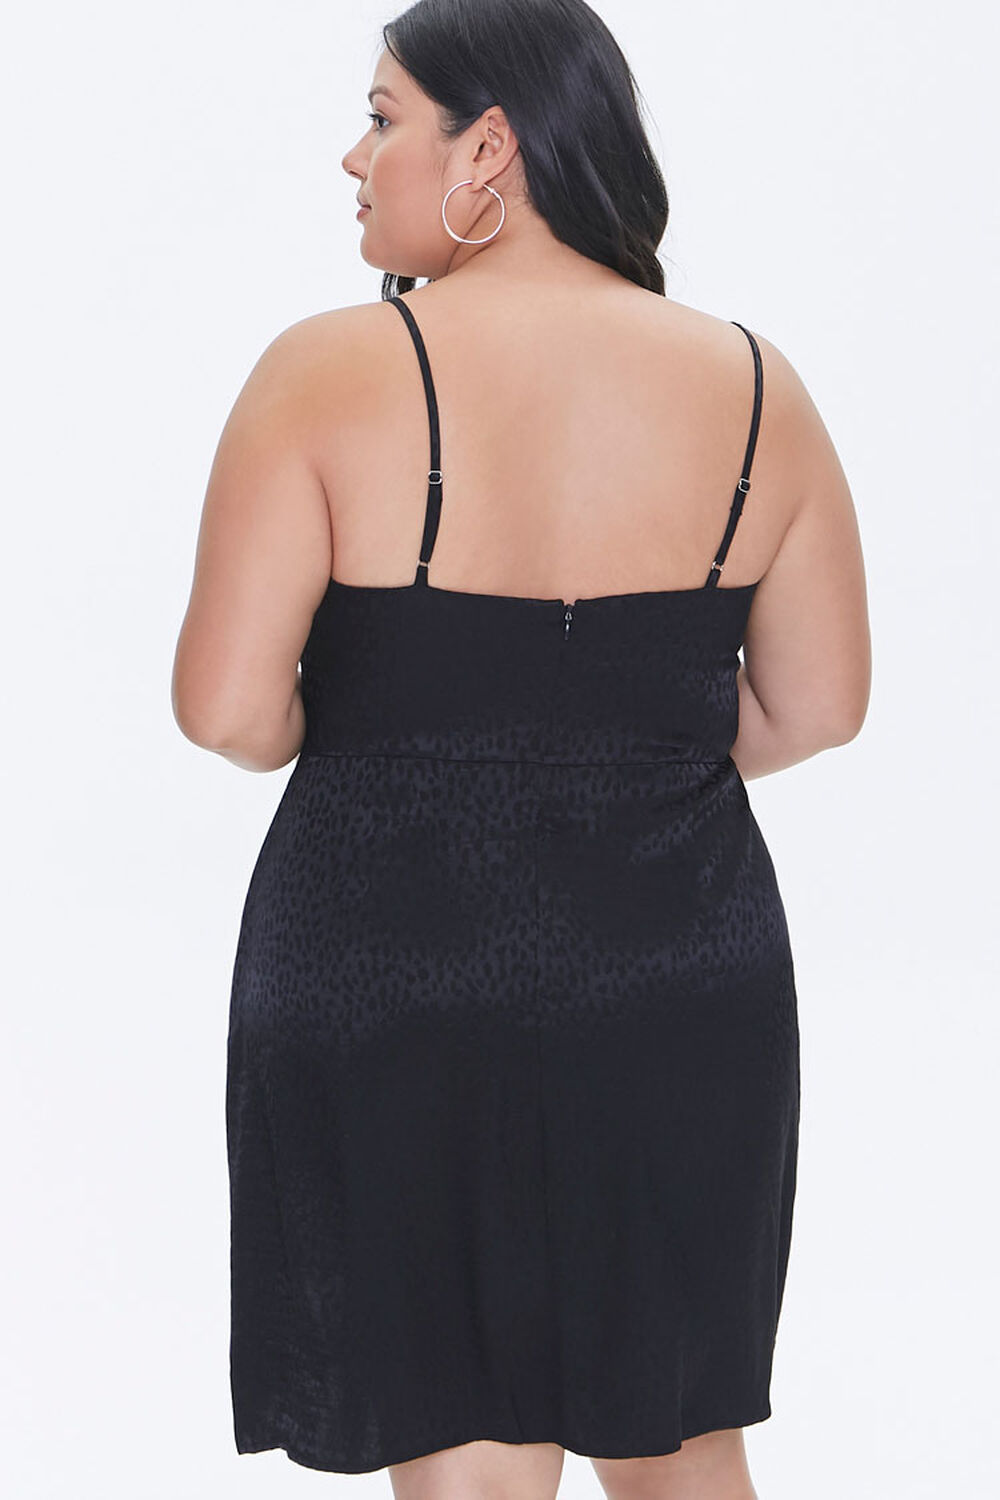 BLACK Plus Size Jacquard Cami Dress, image 3